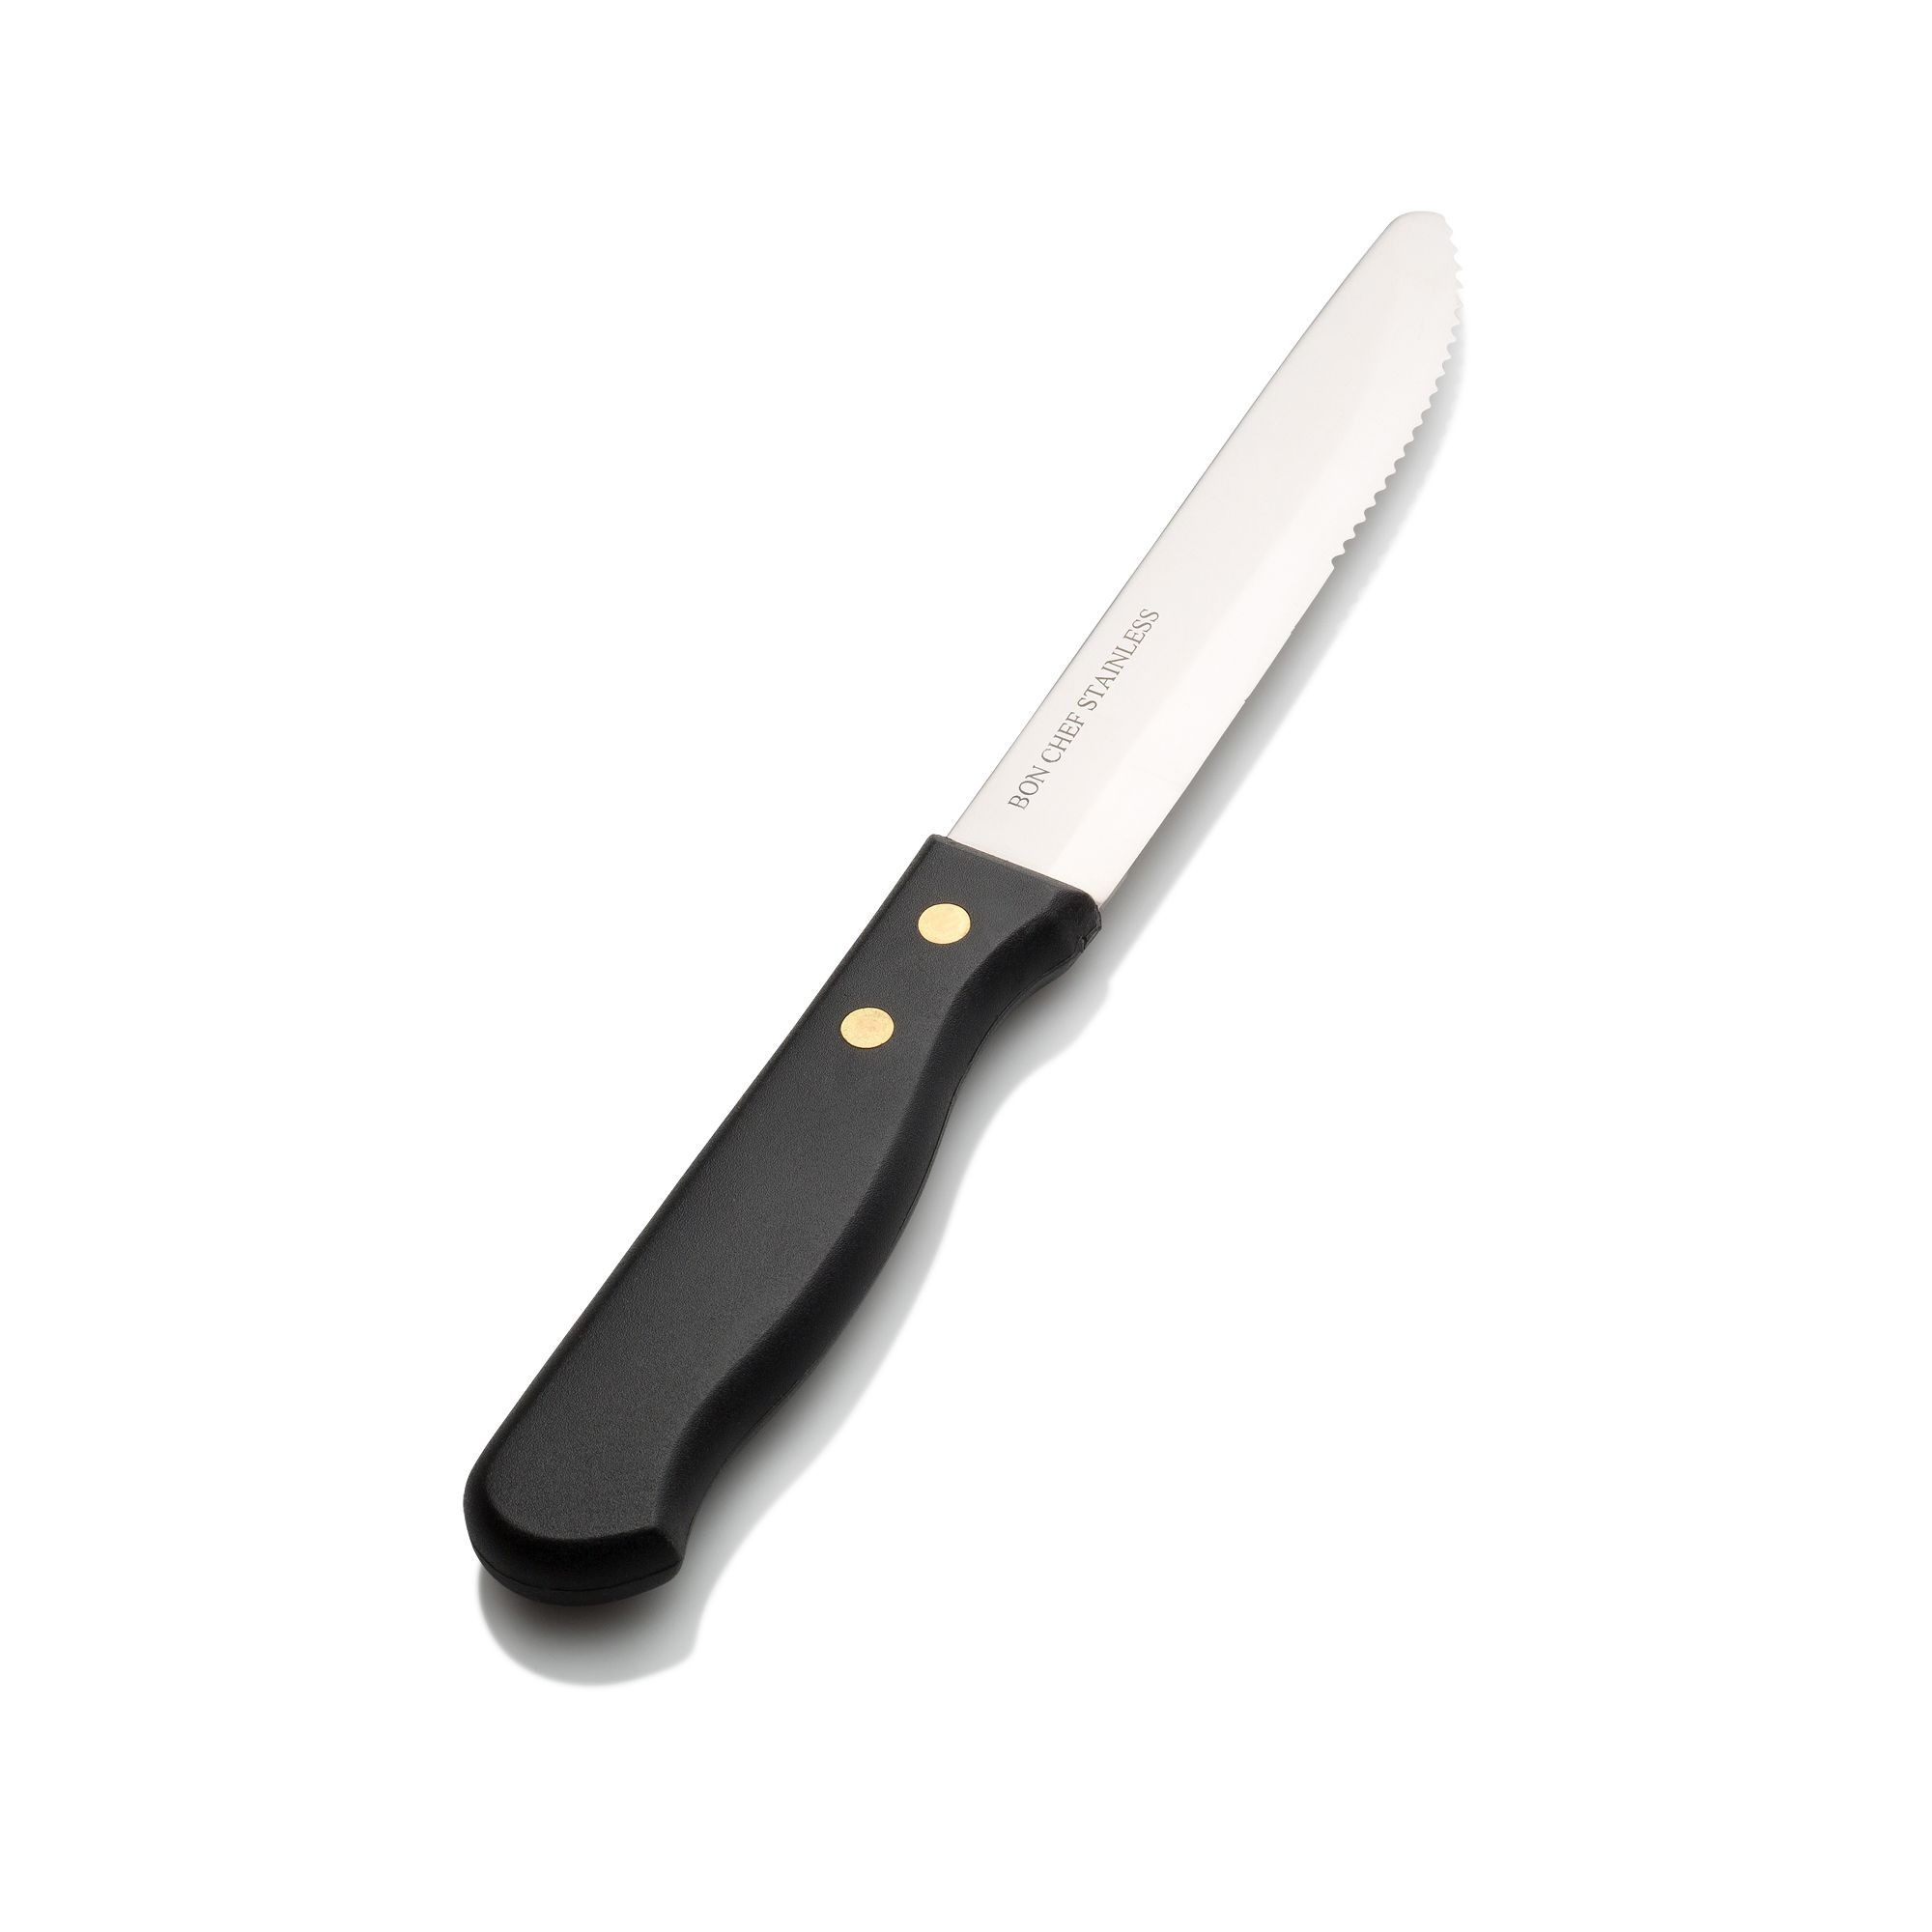 Bon Chef S935 Gaucho Steak Knife with Round Tip Blade 10